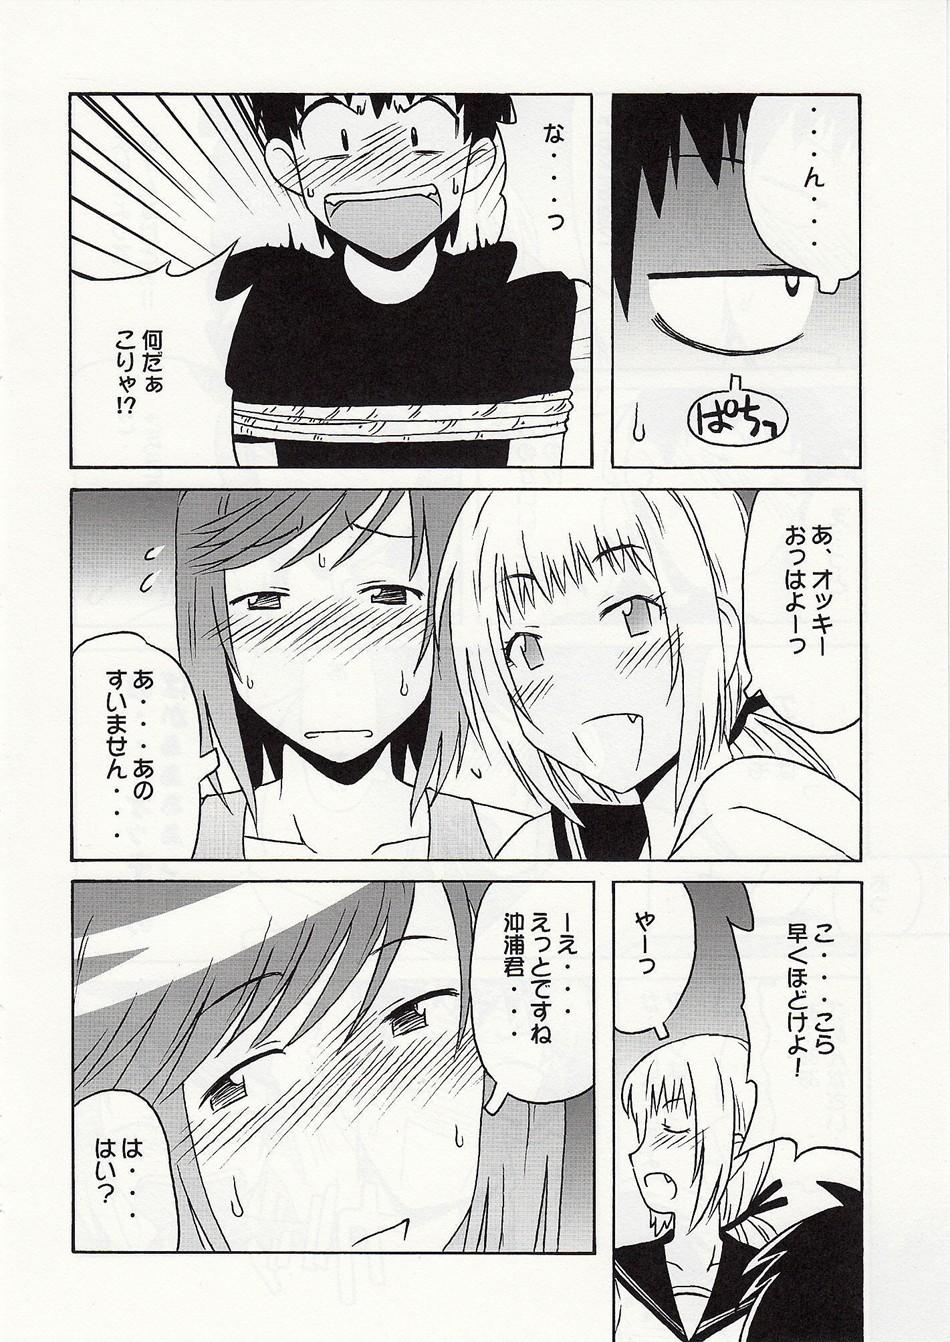 Homemade 静岡さん&まぁやとえっち - Umisho Fucking Girls - Page 9